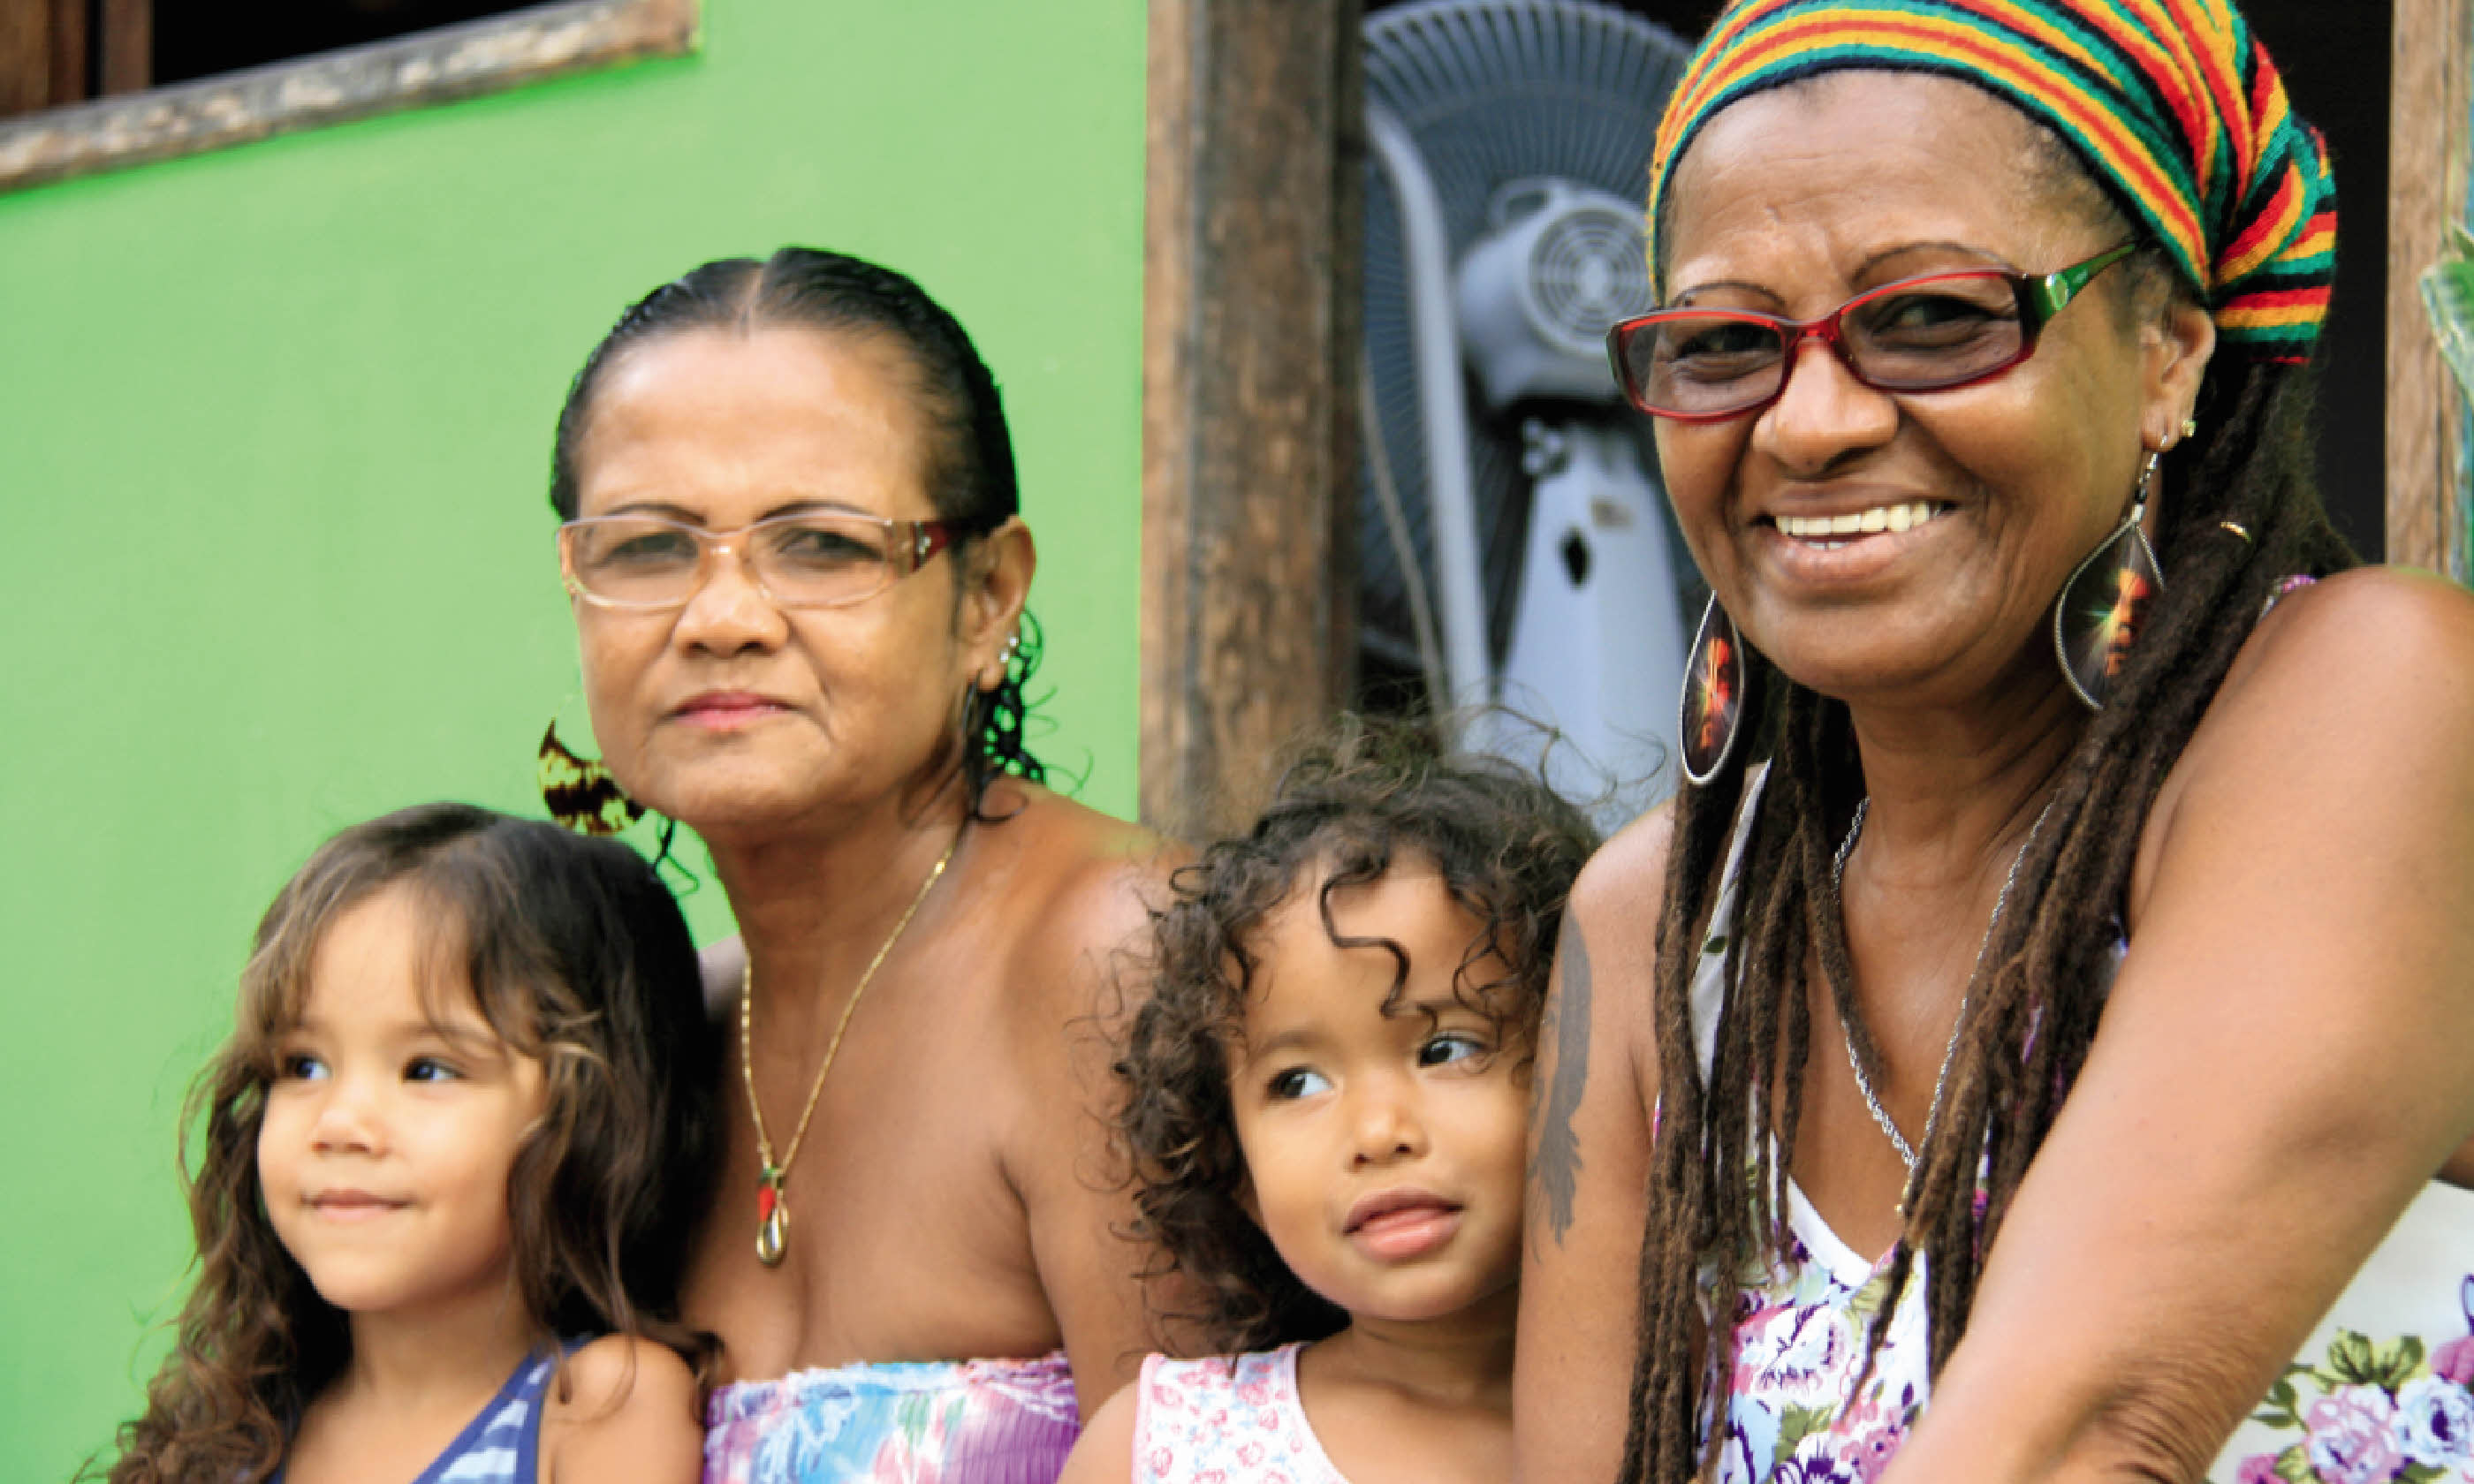 Edite do Santos and her family (photo: Nick Boulos)